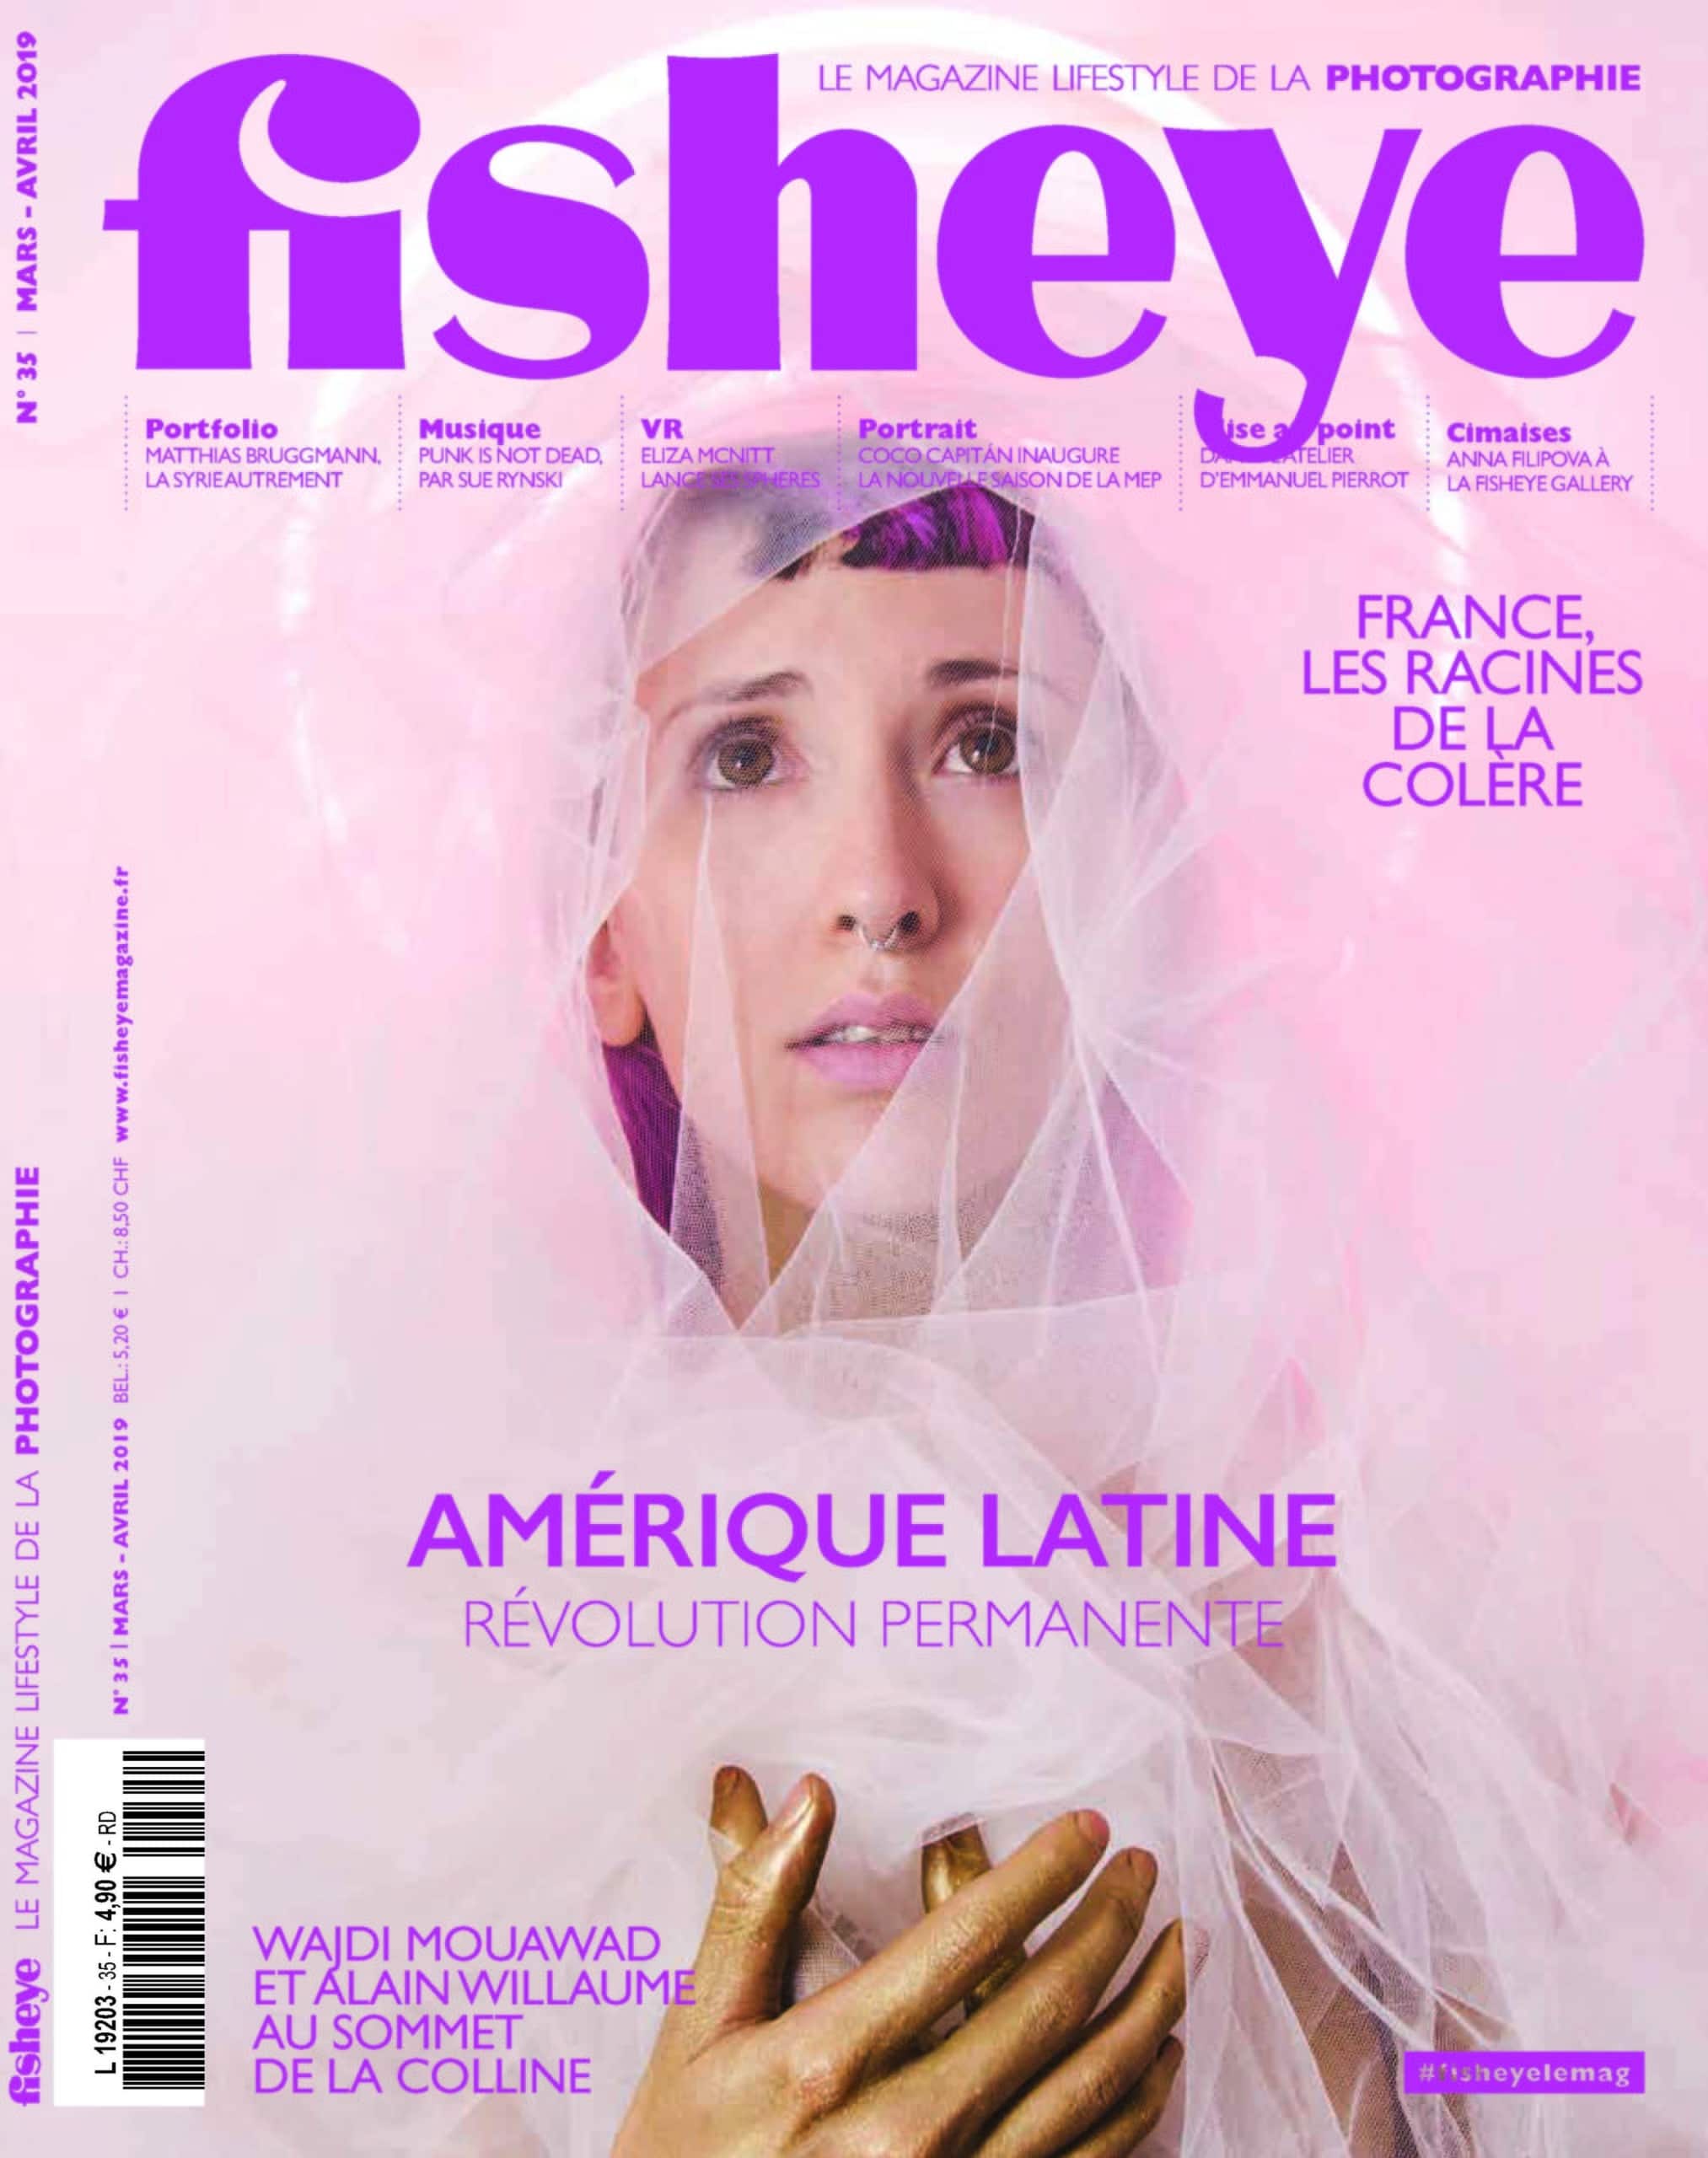 Fisheye Magazine #35 Amérique latine, Révolution permanente